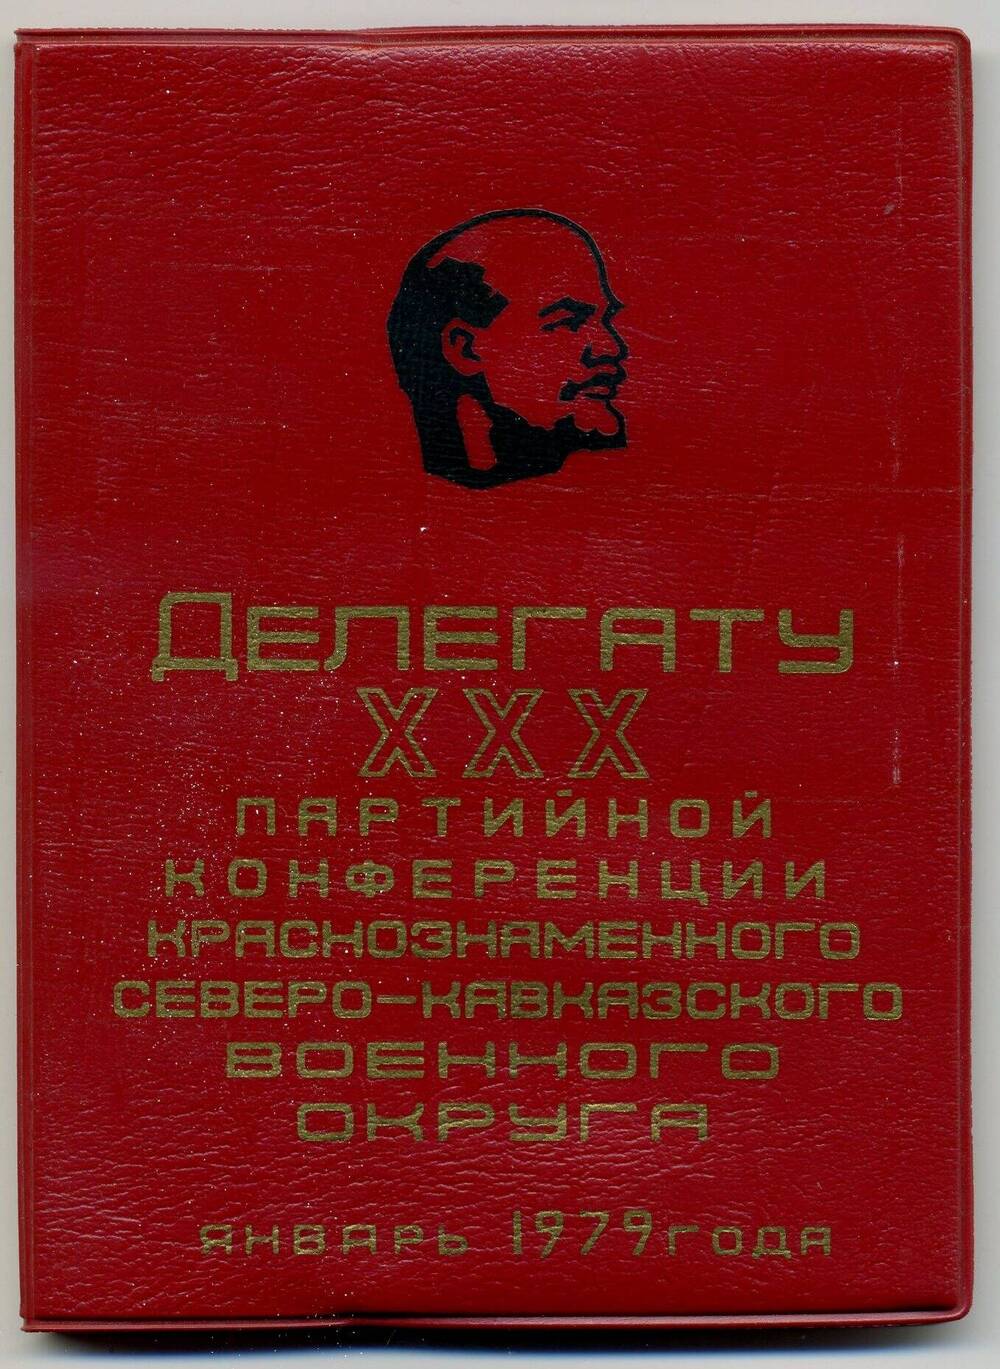 Рабочий блокнот делегата ХХХ партийной конференции КСКВО Рябышева Д.И. Январь 1979 г.